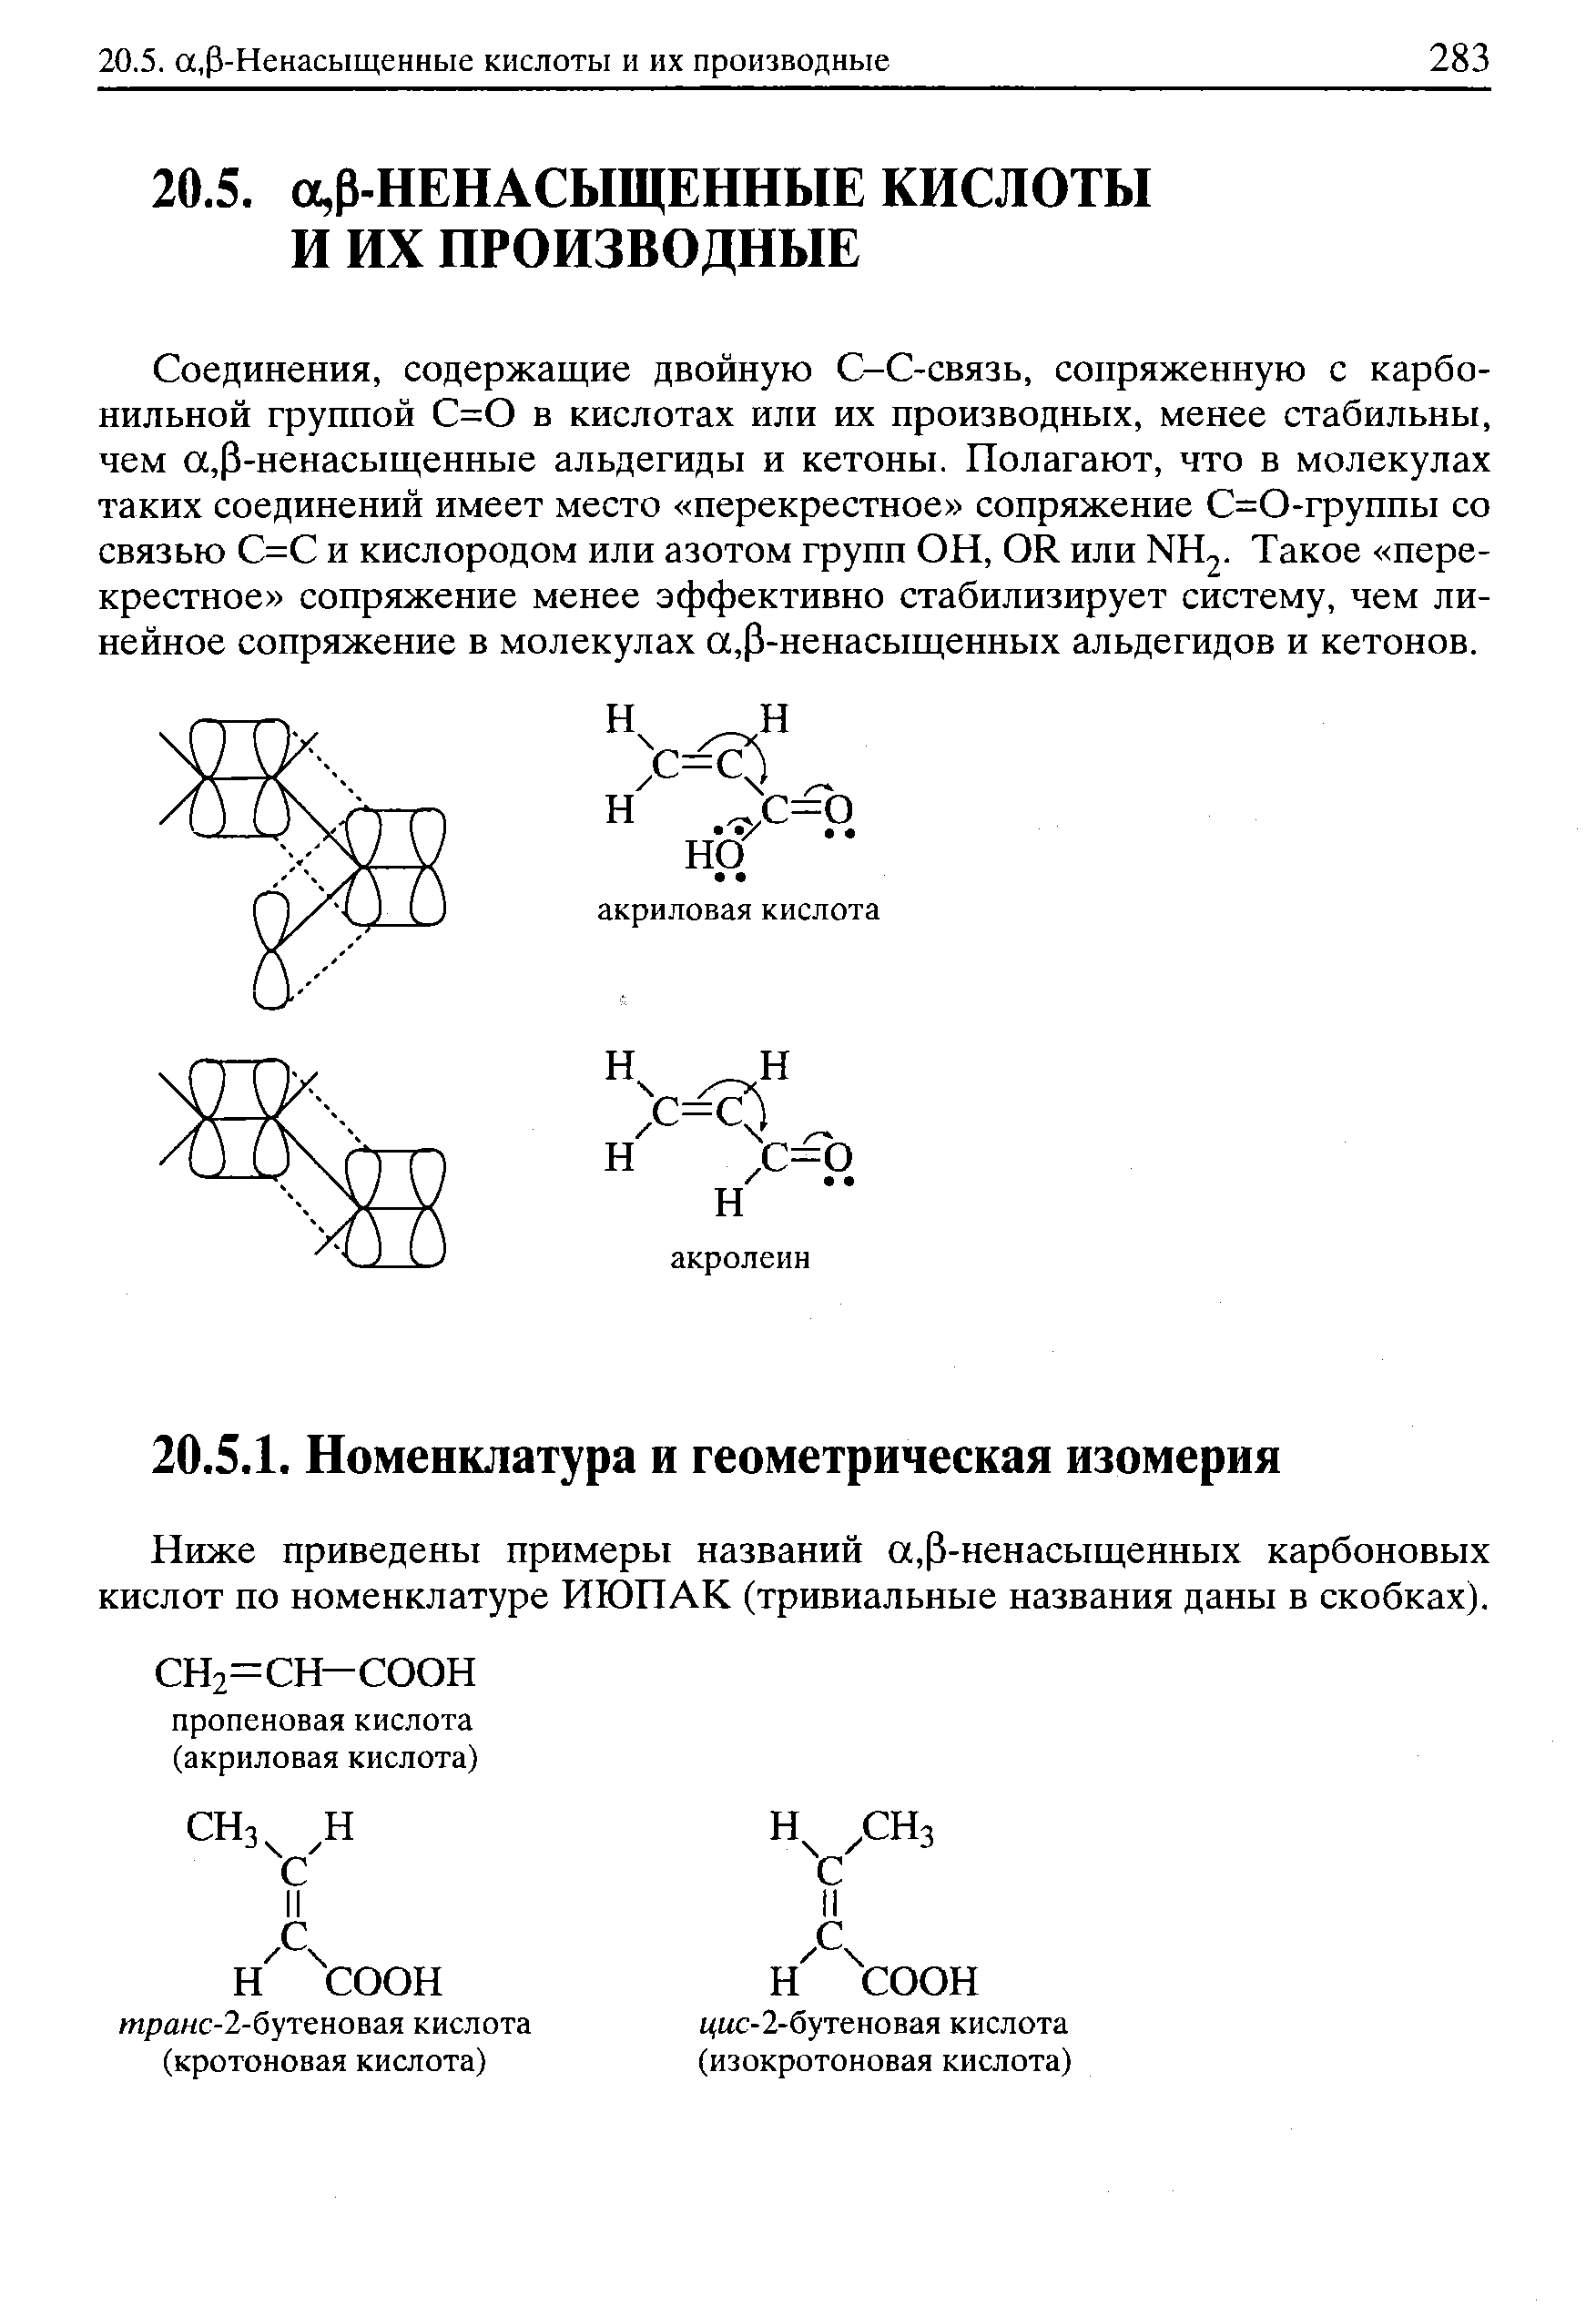 Ниже приведены примеры названий а,Р-ненасыщенных карбоновых кислот по номенклатуре ИЮПАК (тривиальные названия даны в скобках).